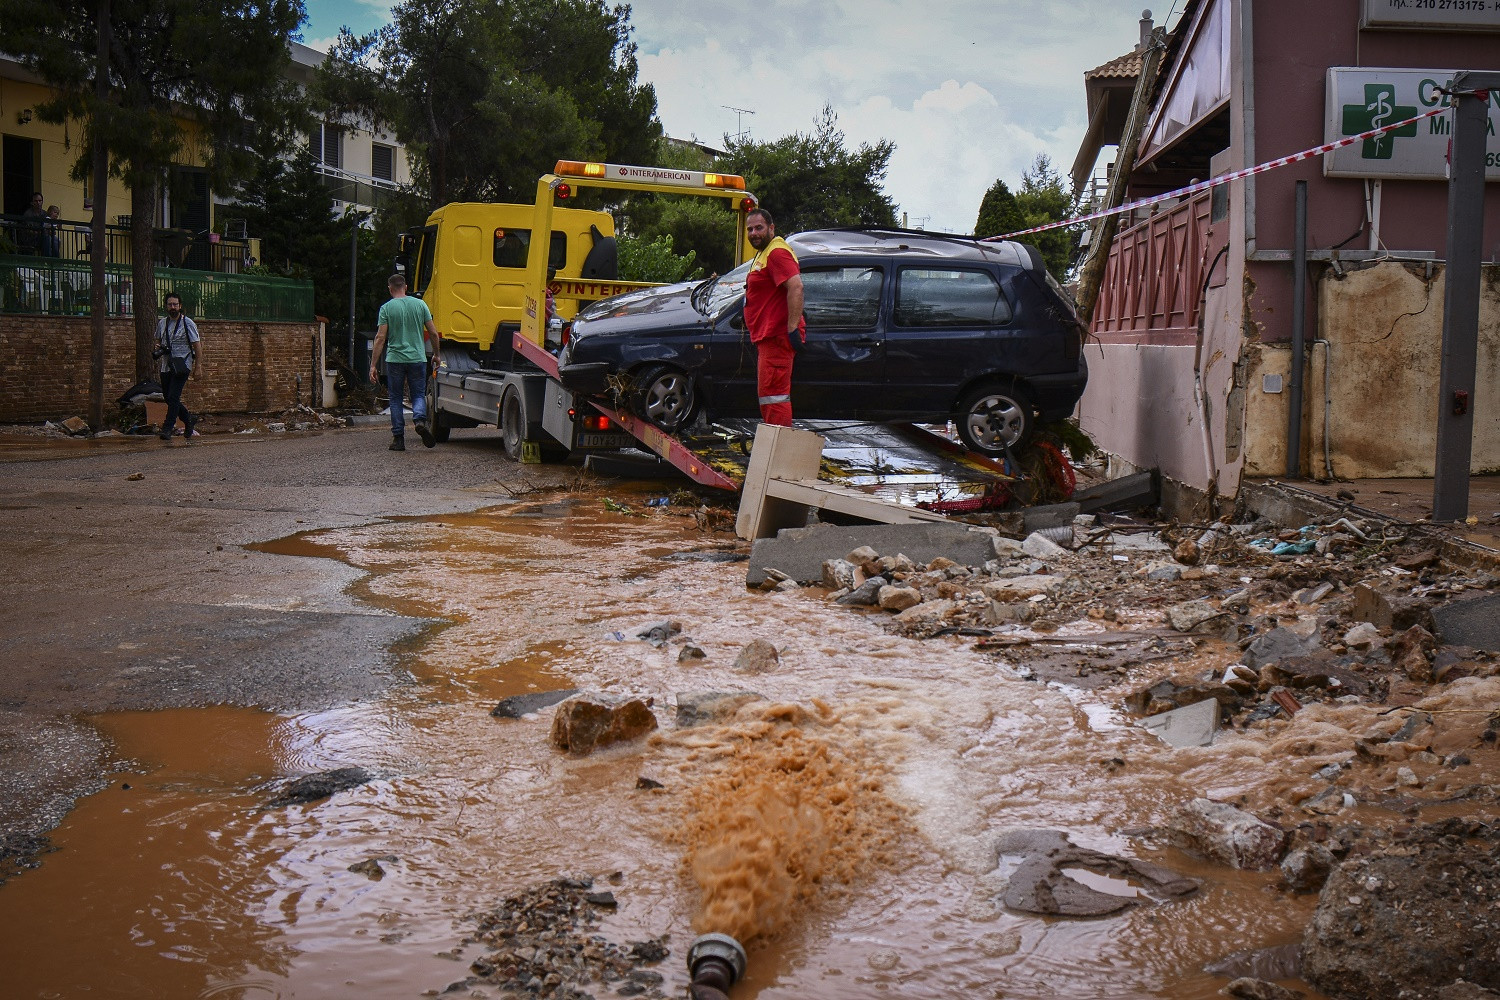 Μάνδρα 2020: Χωρίς αποζημίωση τρία χρόνια μετά, οι καταγγελίες των πλημμυροπαθών κι η διαμάχη που φώλιασε στην πόλη